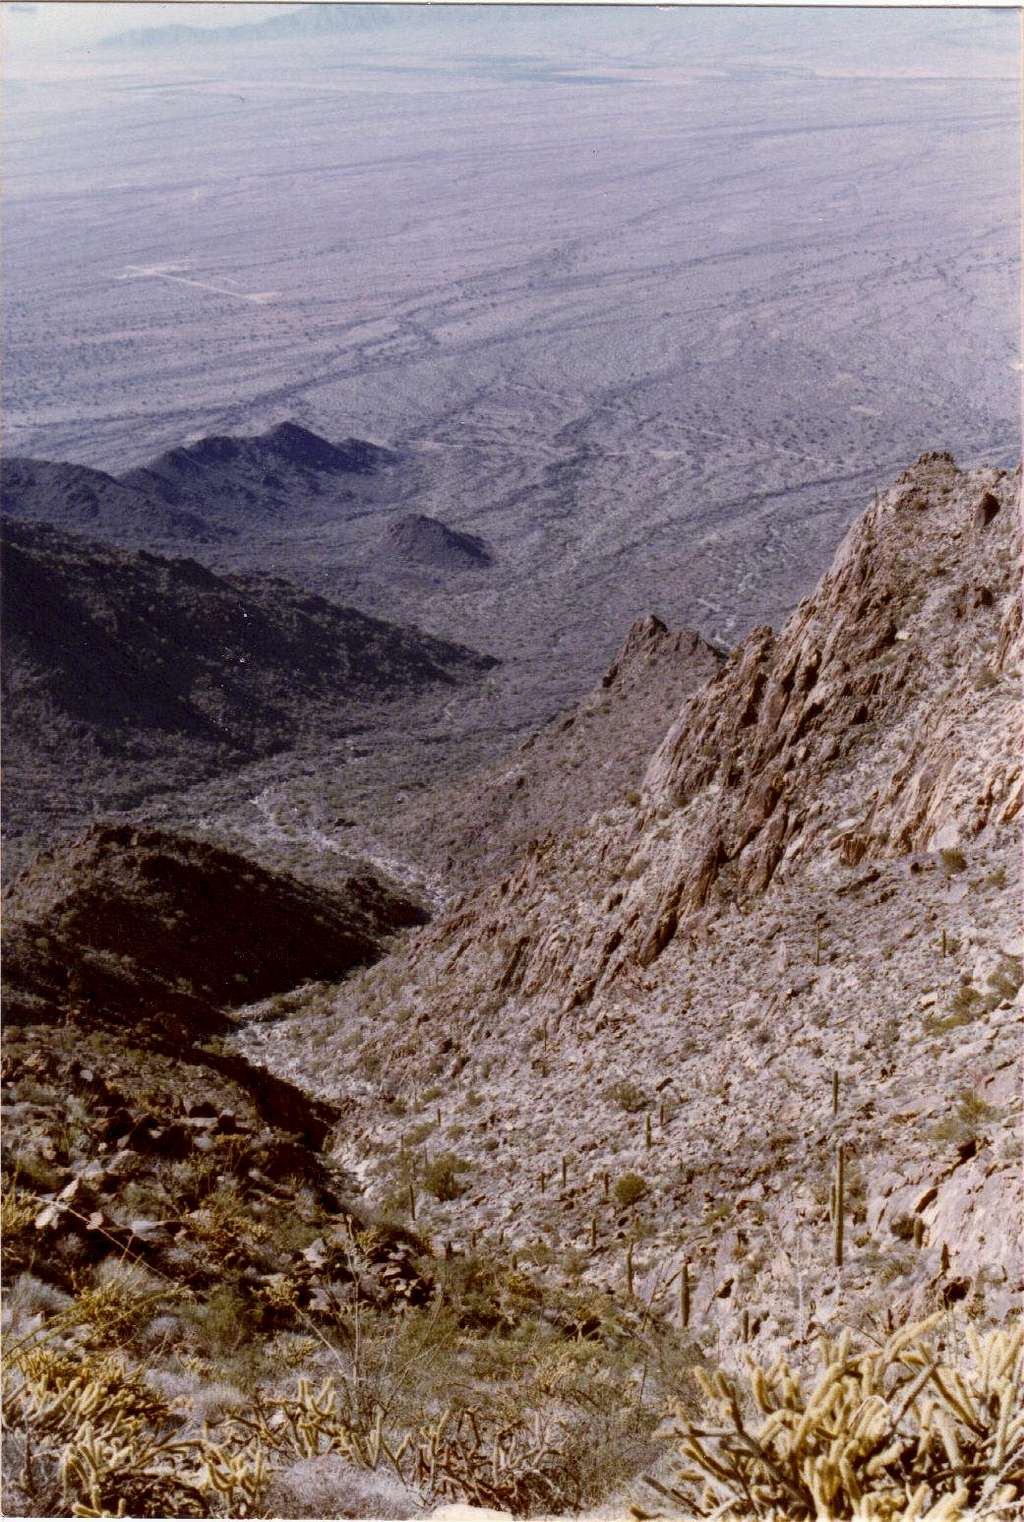 Sierra Estrella Peak